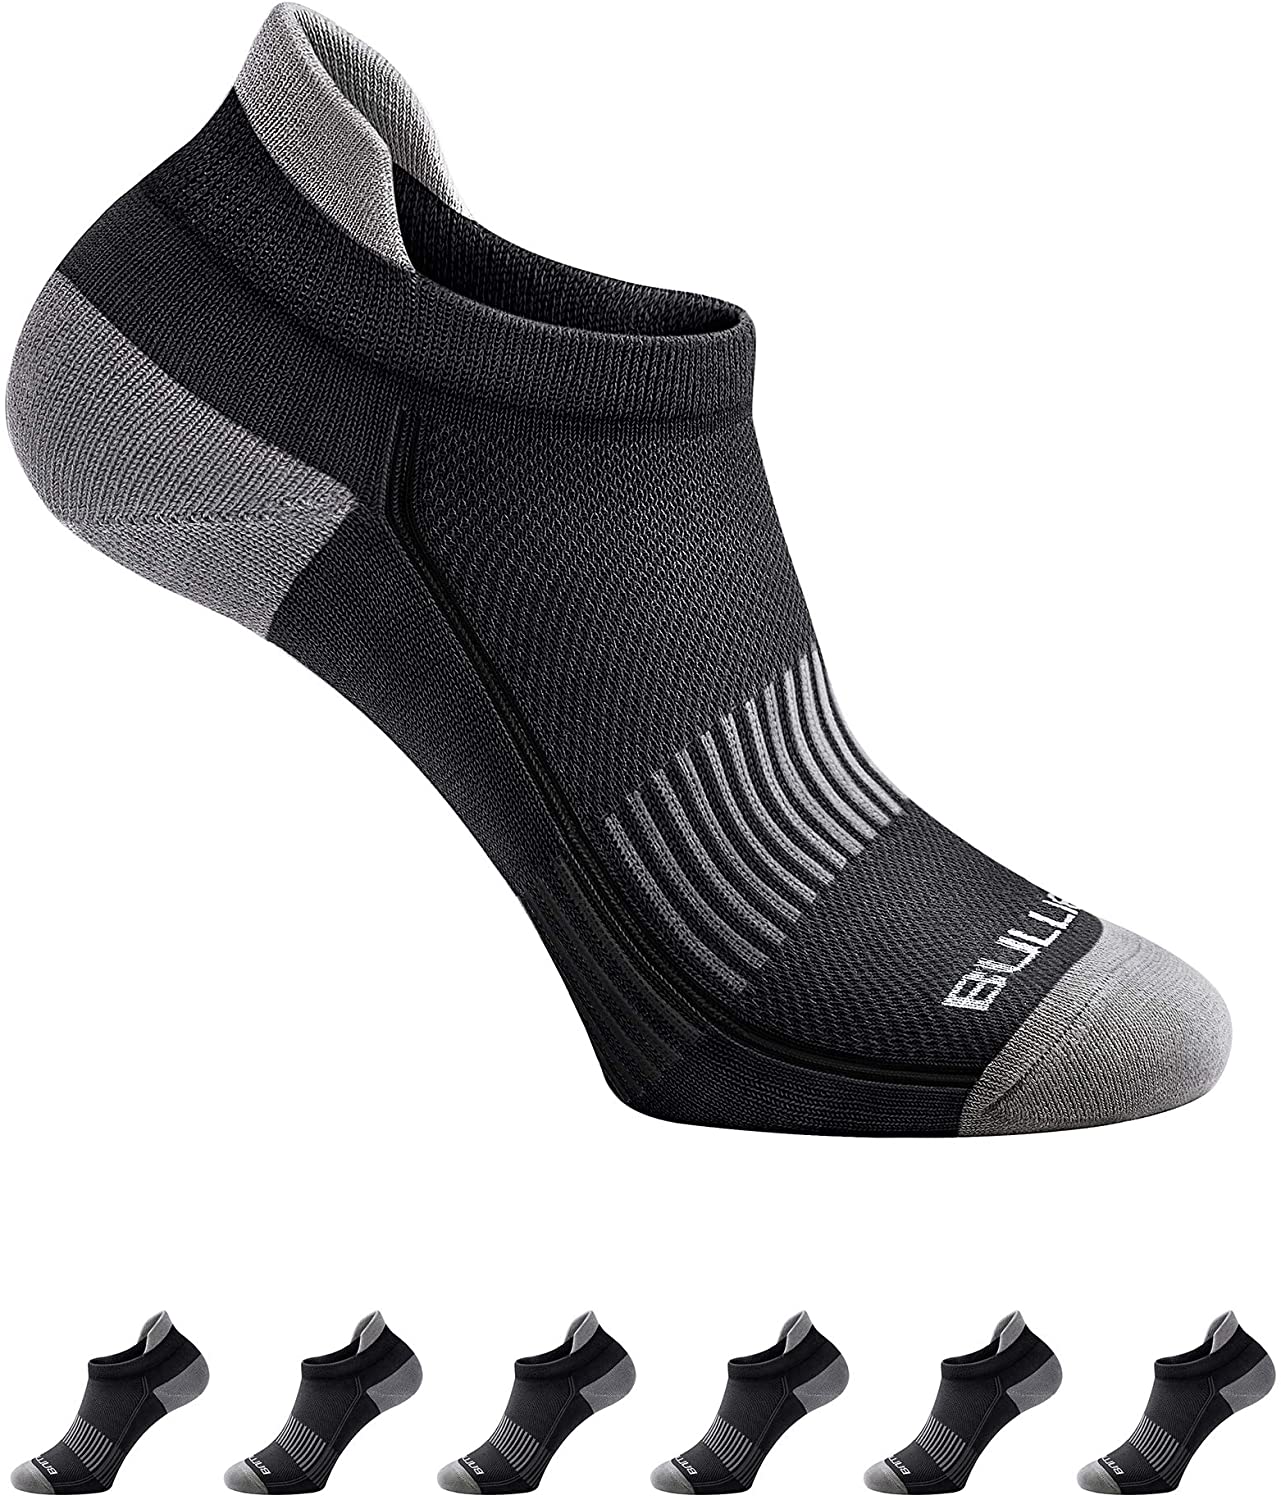  Rojo/Negro  Calcetines de esquí de Fondo/ocke con compresión  ACTIVE COMPRESSION Patines Nordic Race Socks 